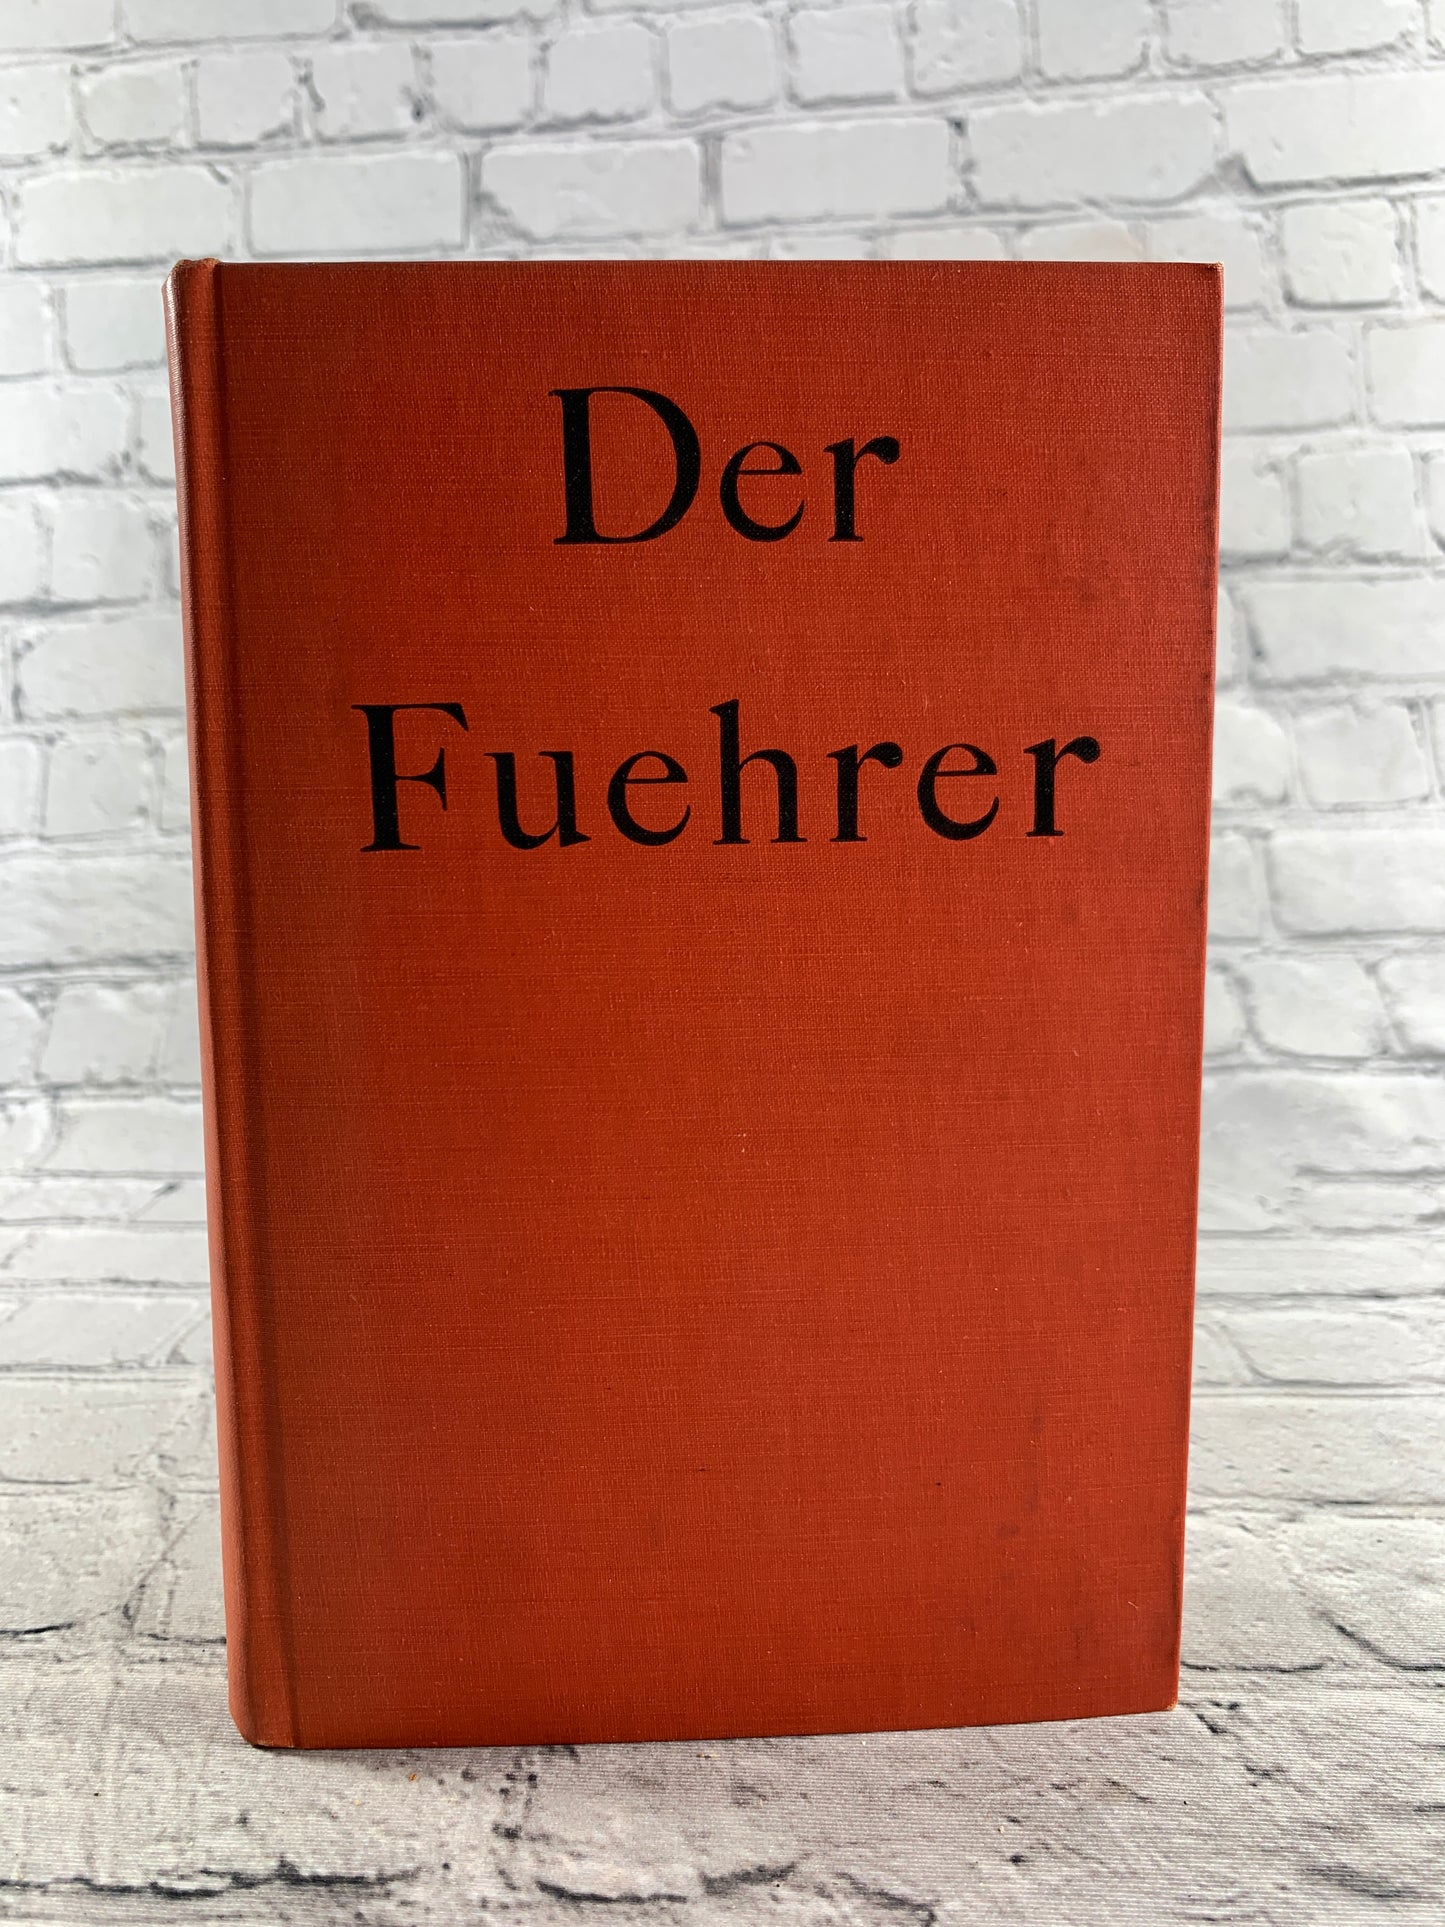 Der Fuehrer: Hitler's Rise to Power by Konrad Heiden [1944]